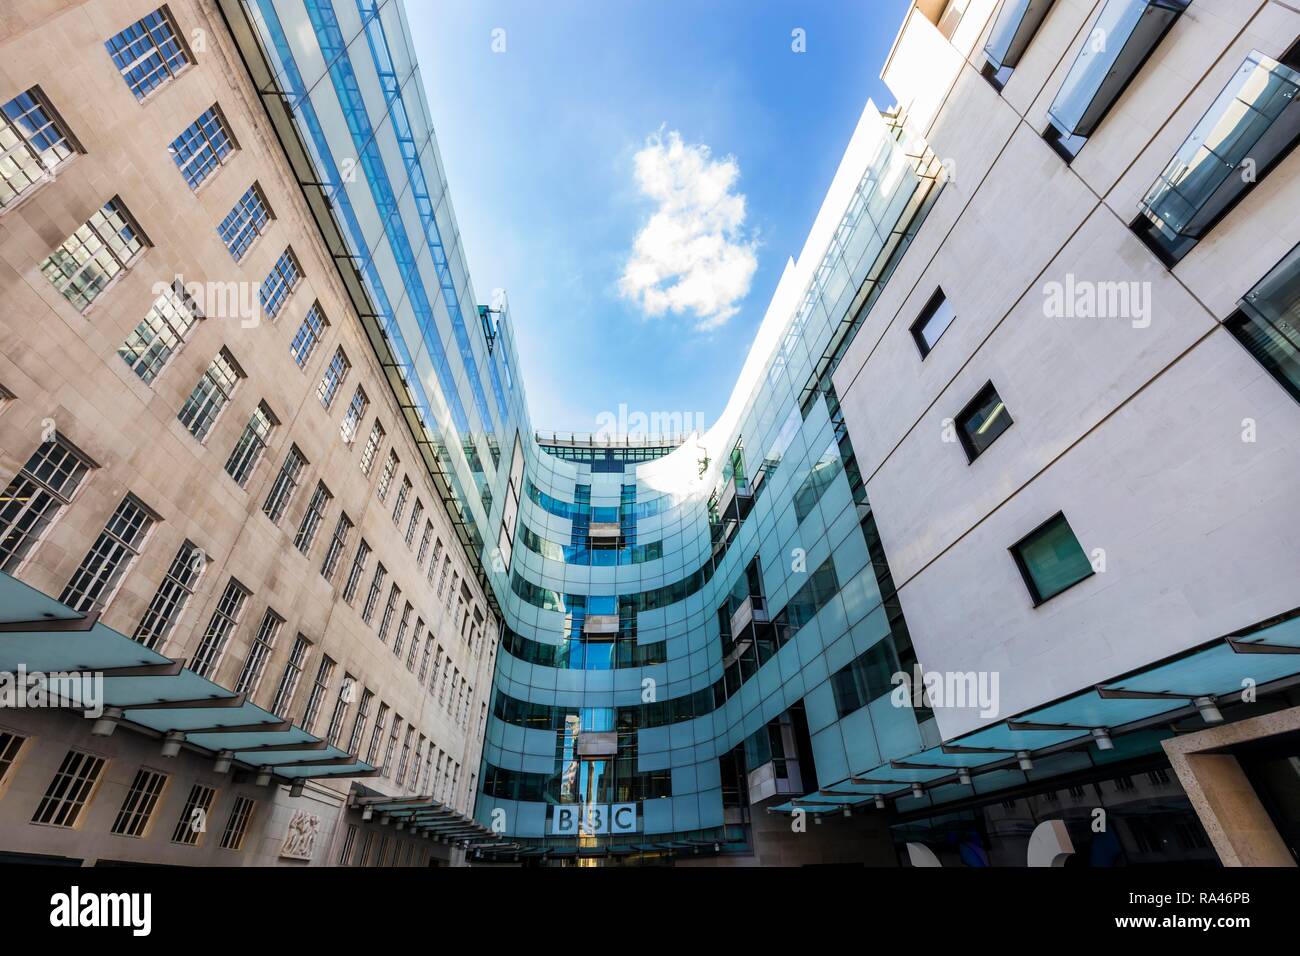 La sede de la emisora de radio y televisión, la BBC Broadcasting House, Londres, Gran Bretaña Foto de stock